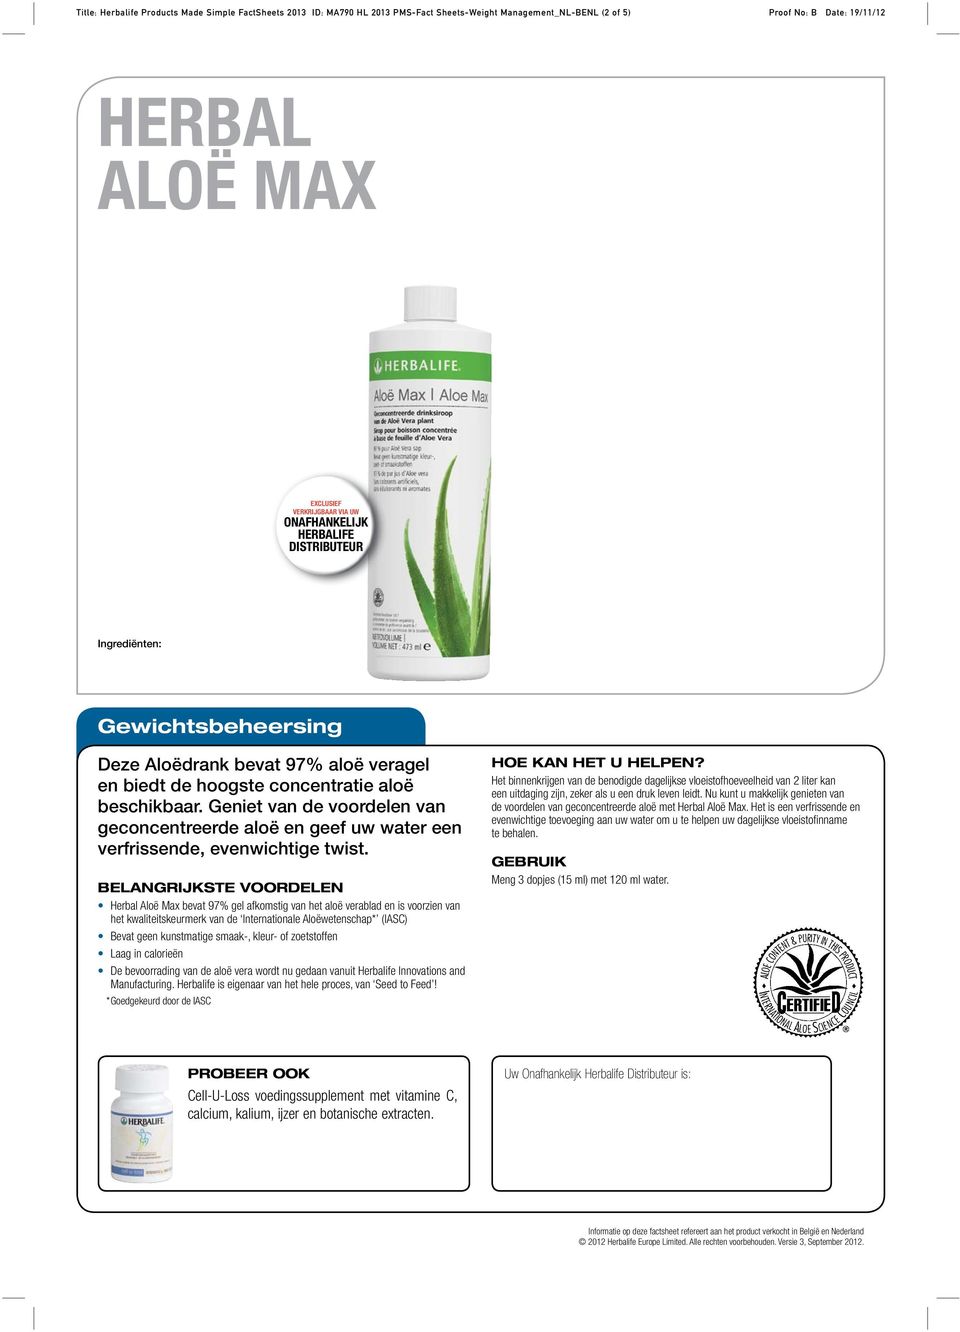 Herbal Aloë Max bevat 97% gel afkomstig van het aloë verablad en is voorzien van het kwaliteitskeurmerk van de Internationale Aloëwetenschap* (IASC) Bevat geen kunstmatige smaak-, kleur- of